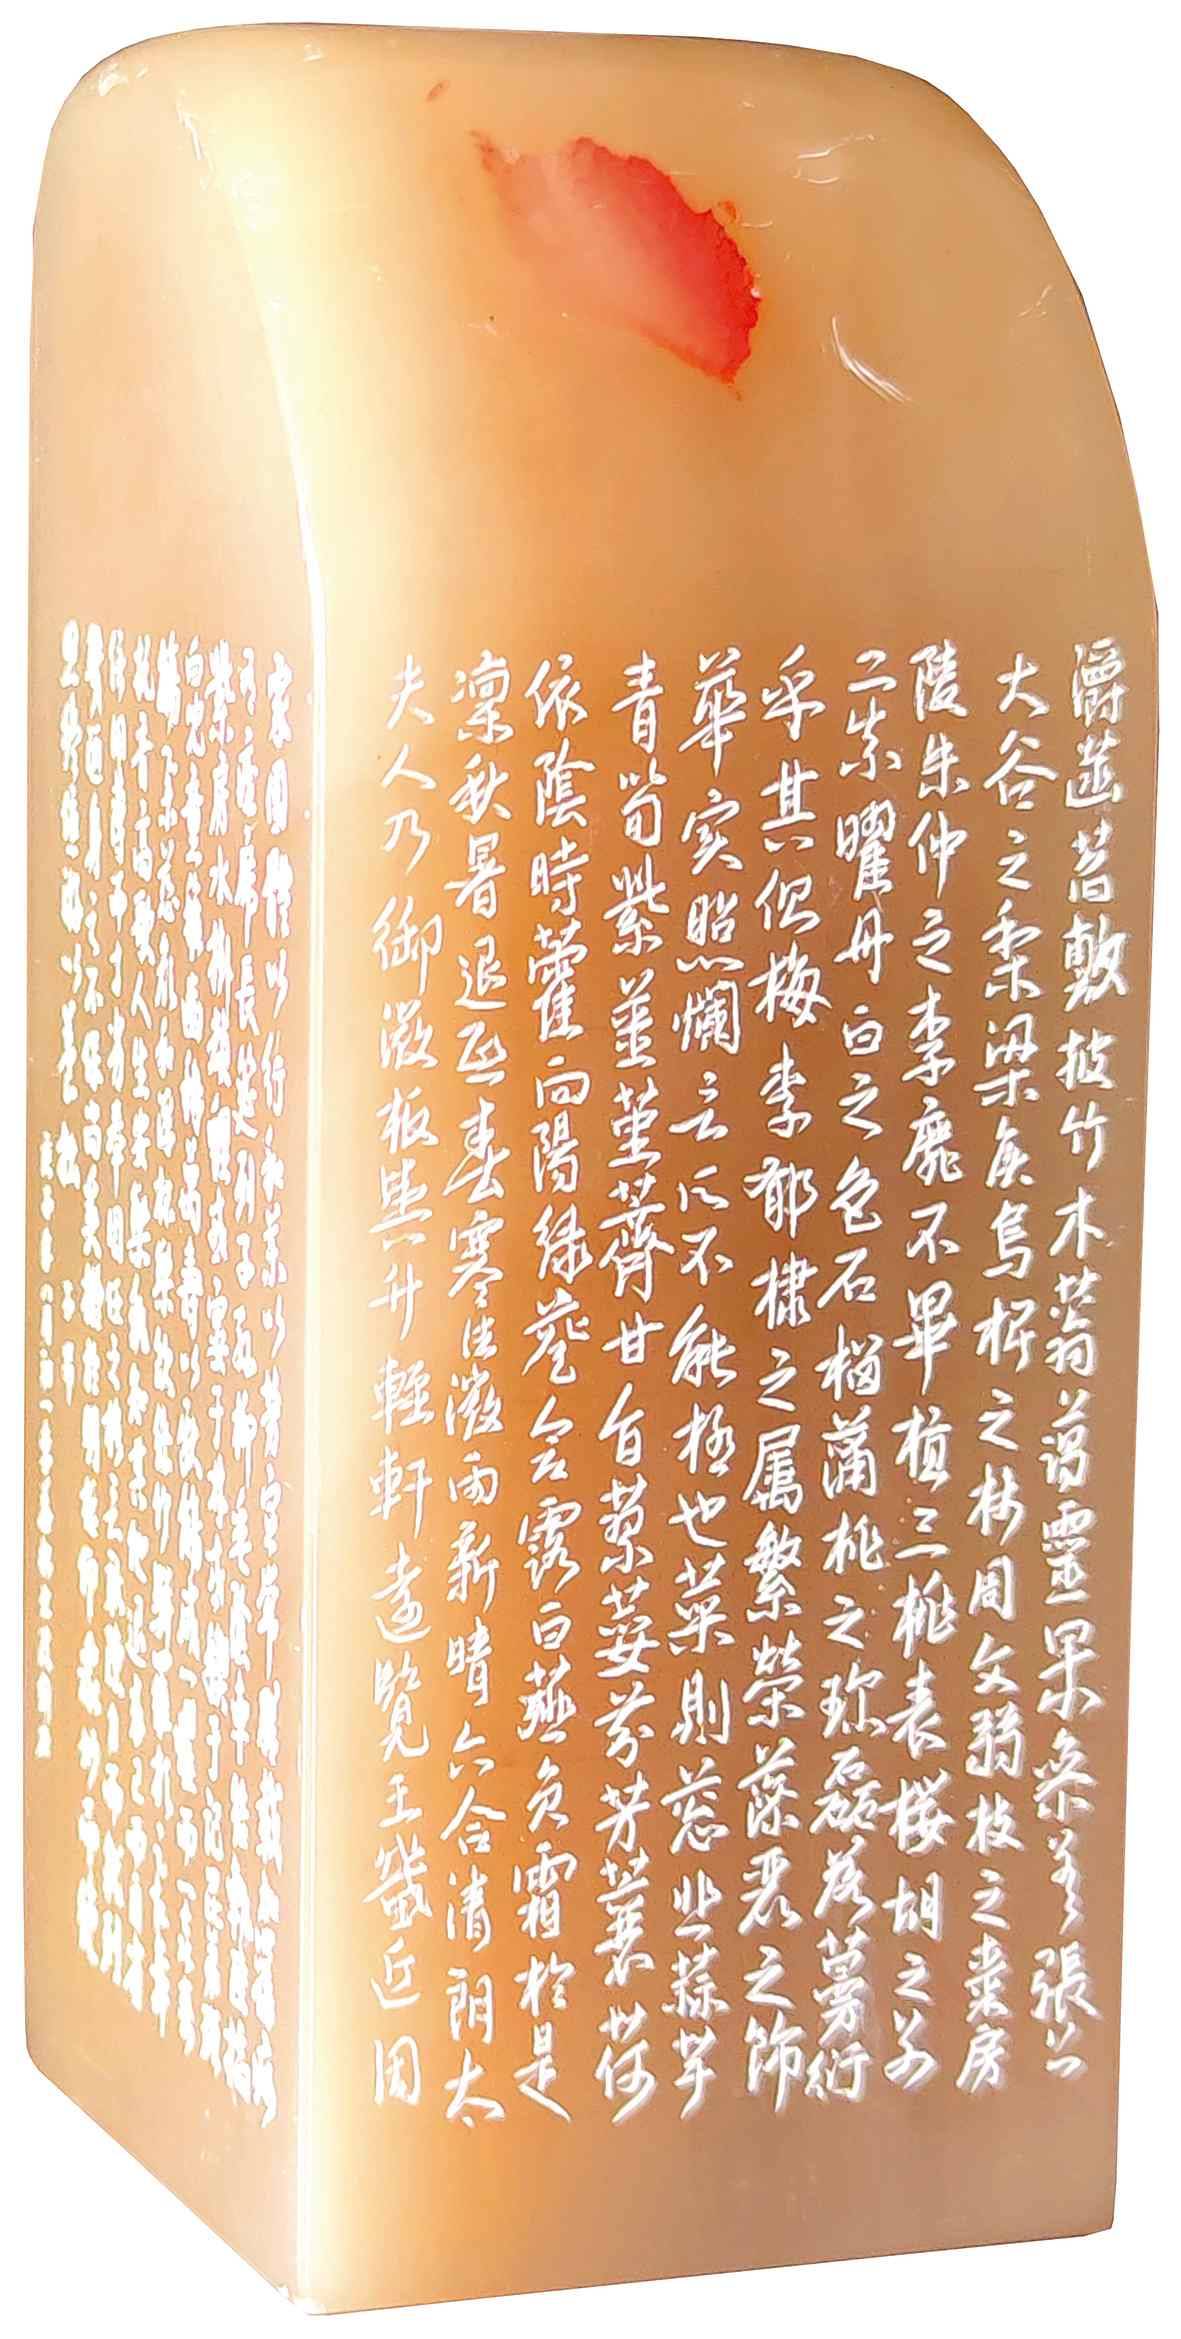 乐意人生 67—67—李华松的书法刻石技艺